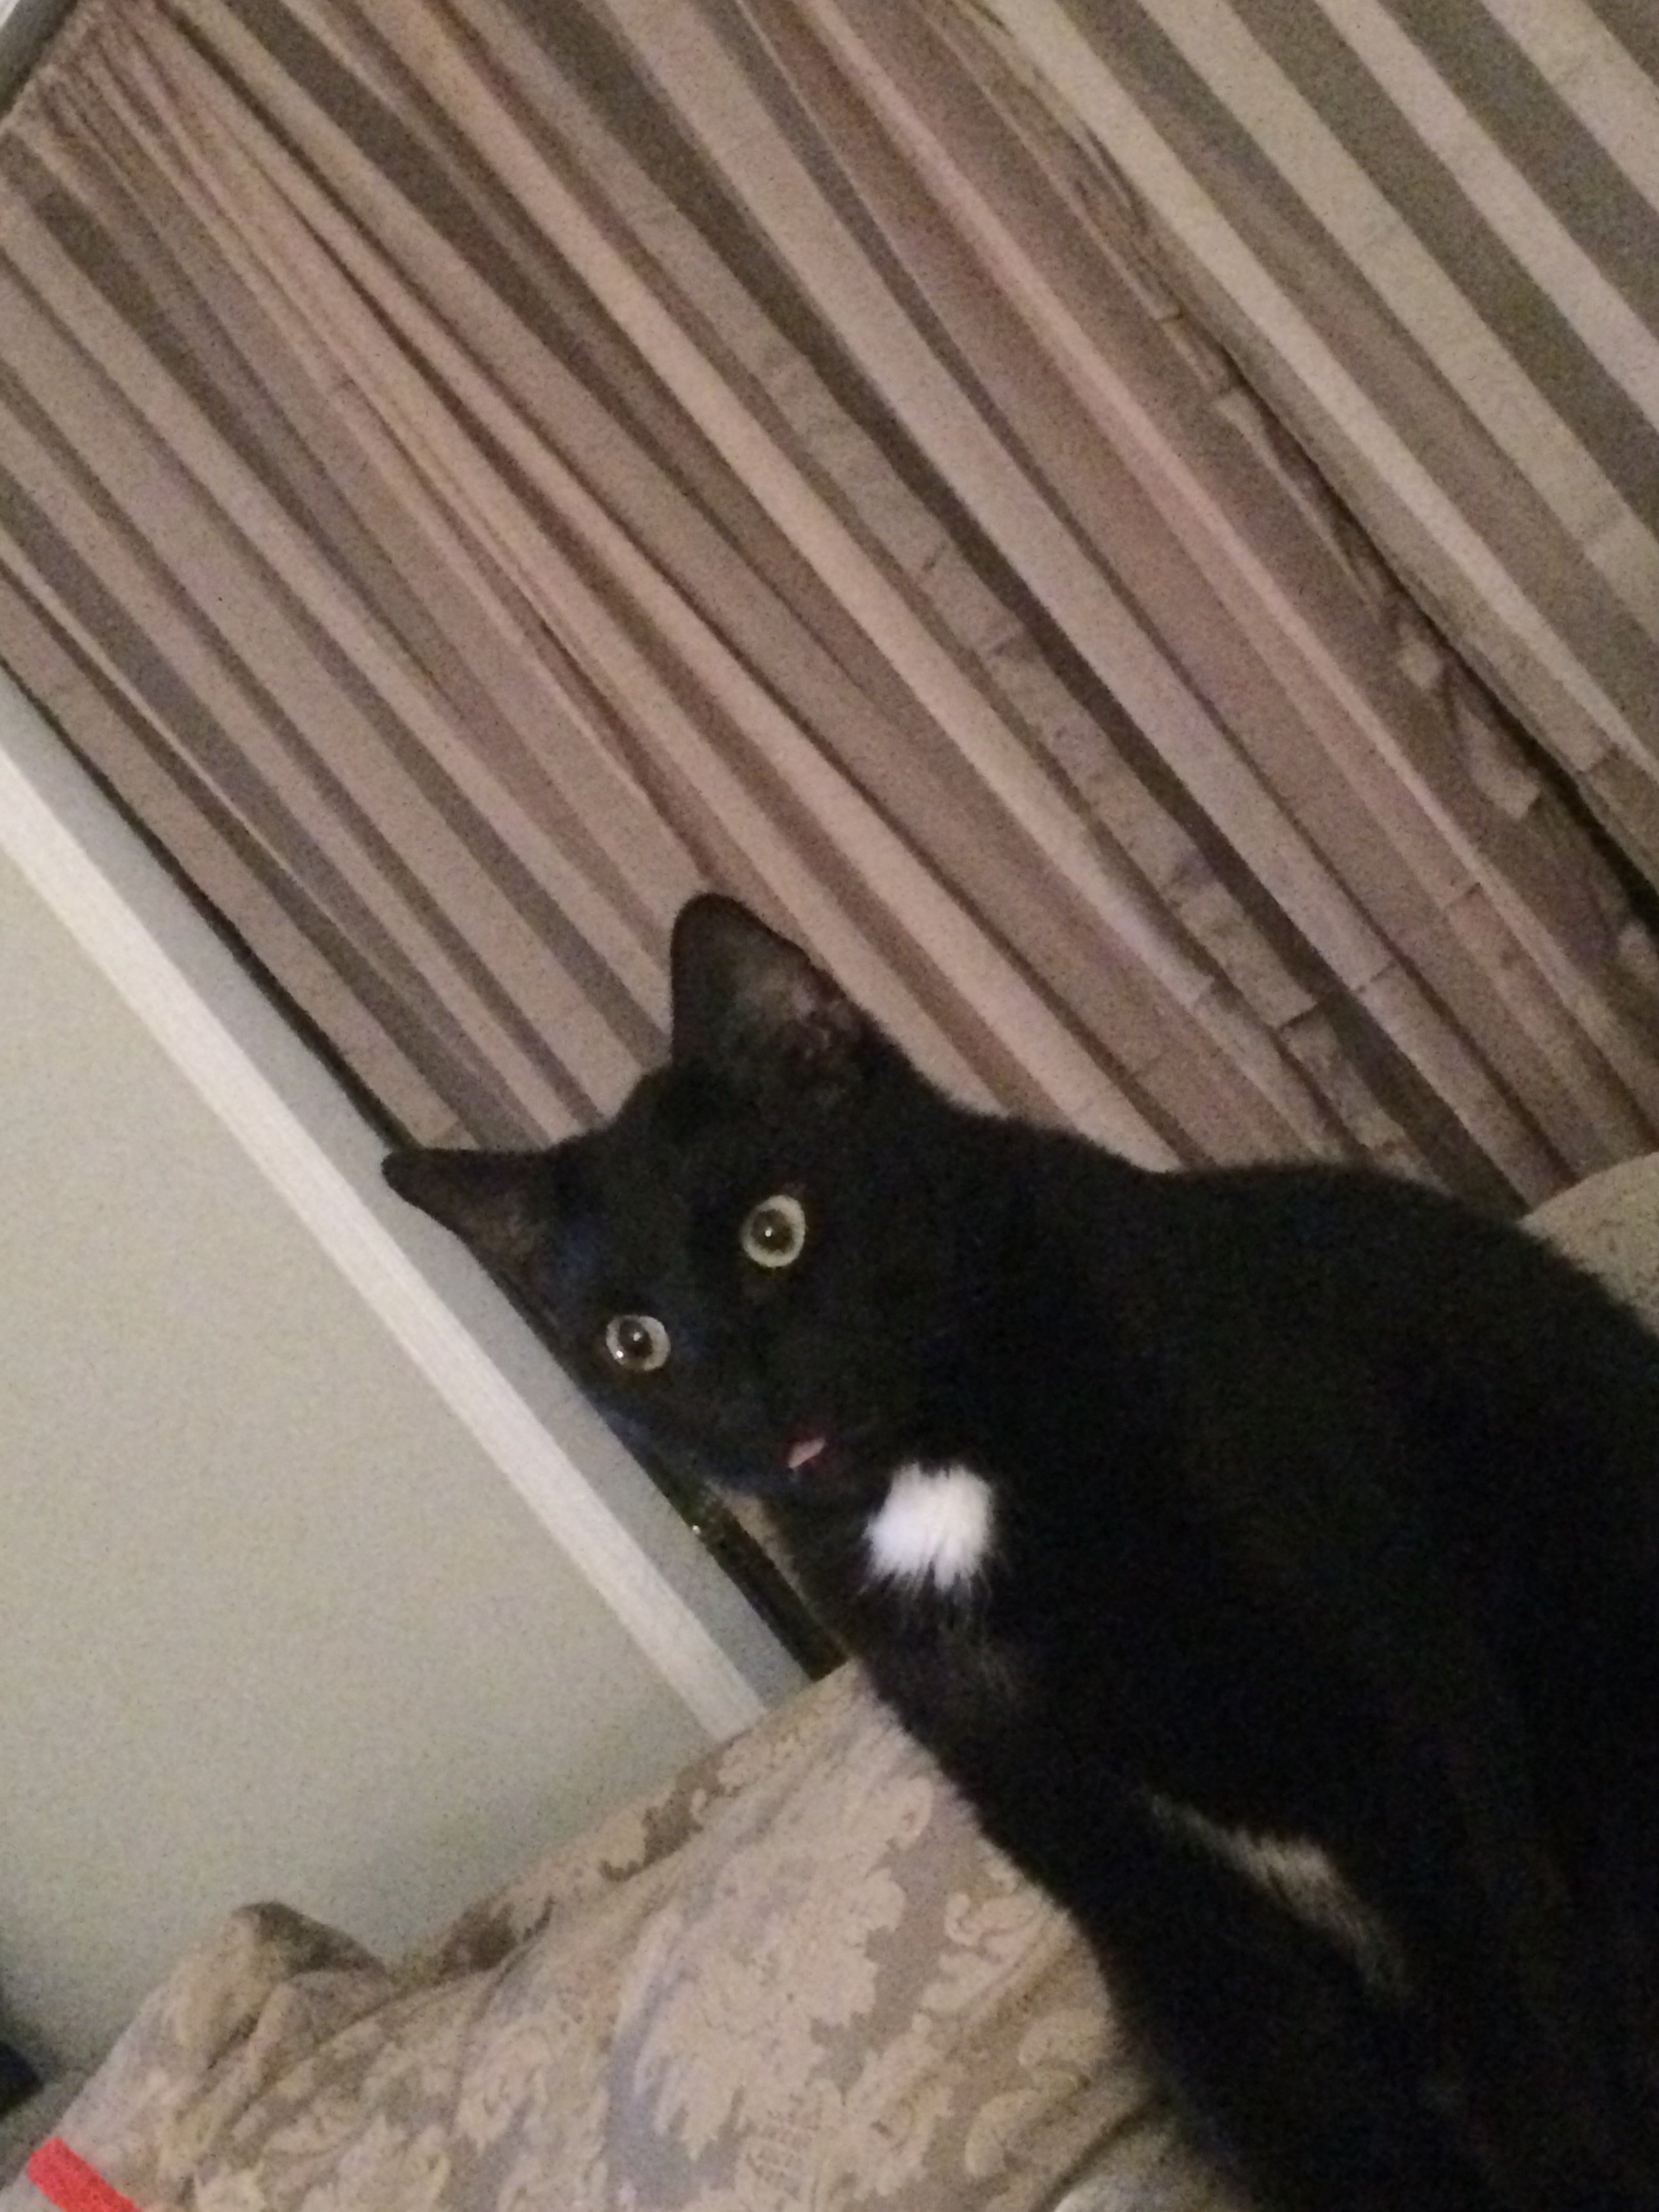 Indooroutdoor Cat Has Been Acting Strange TheCatSite